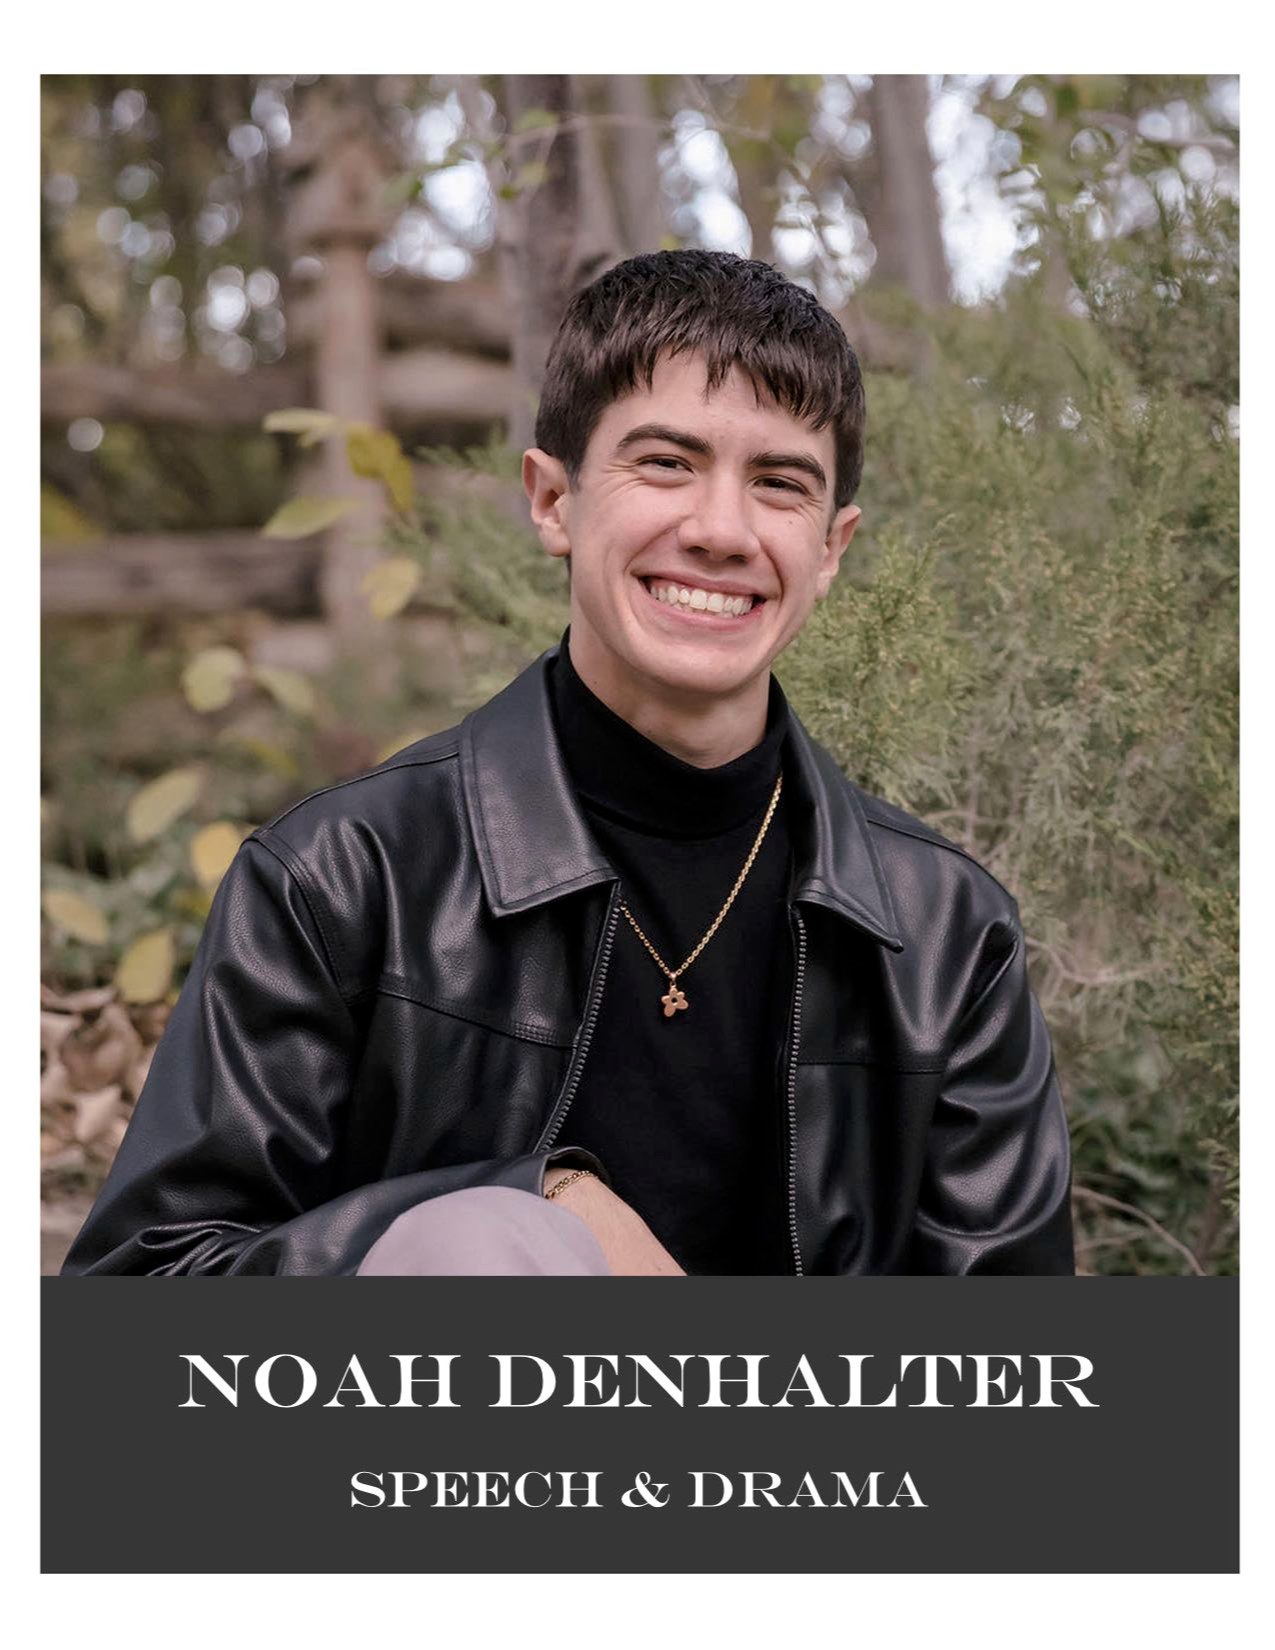 Noah Denhalter